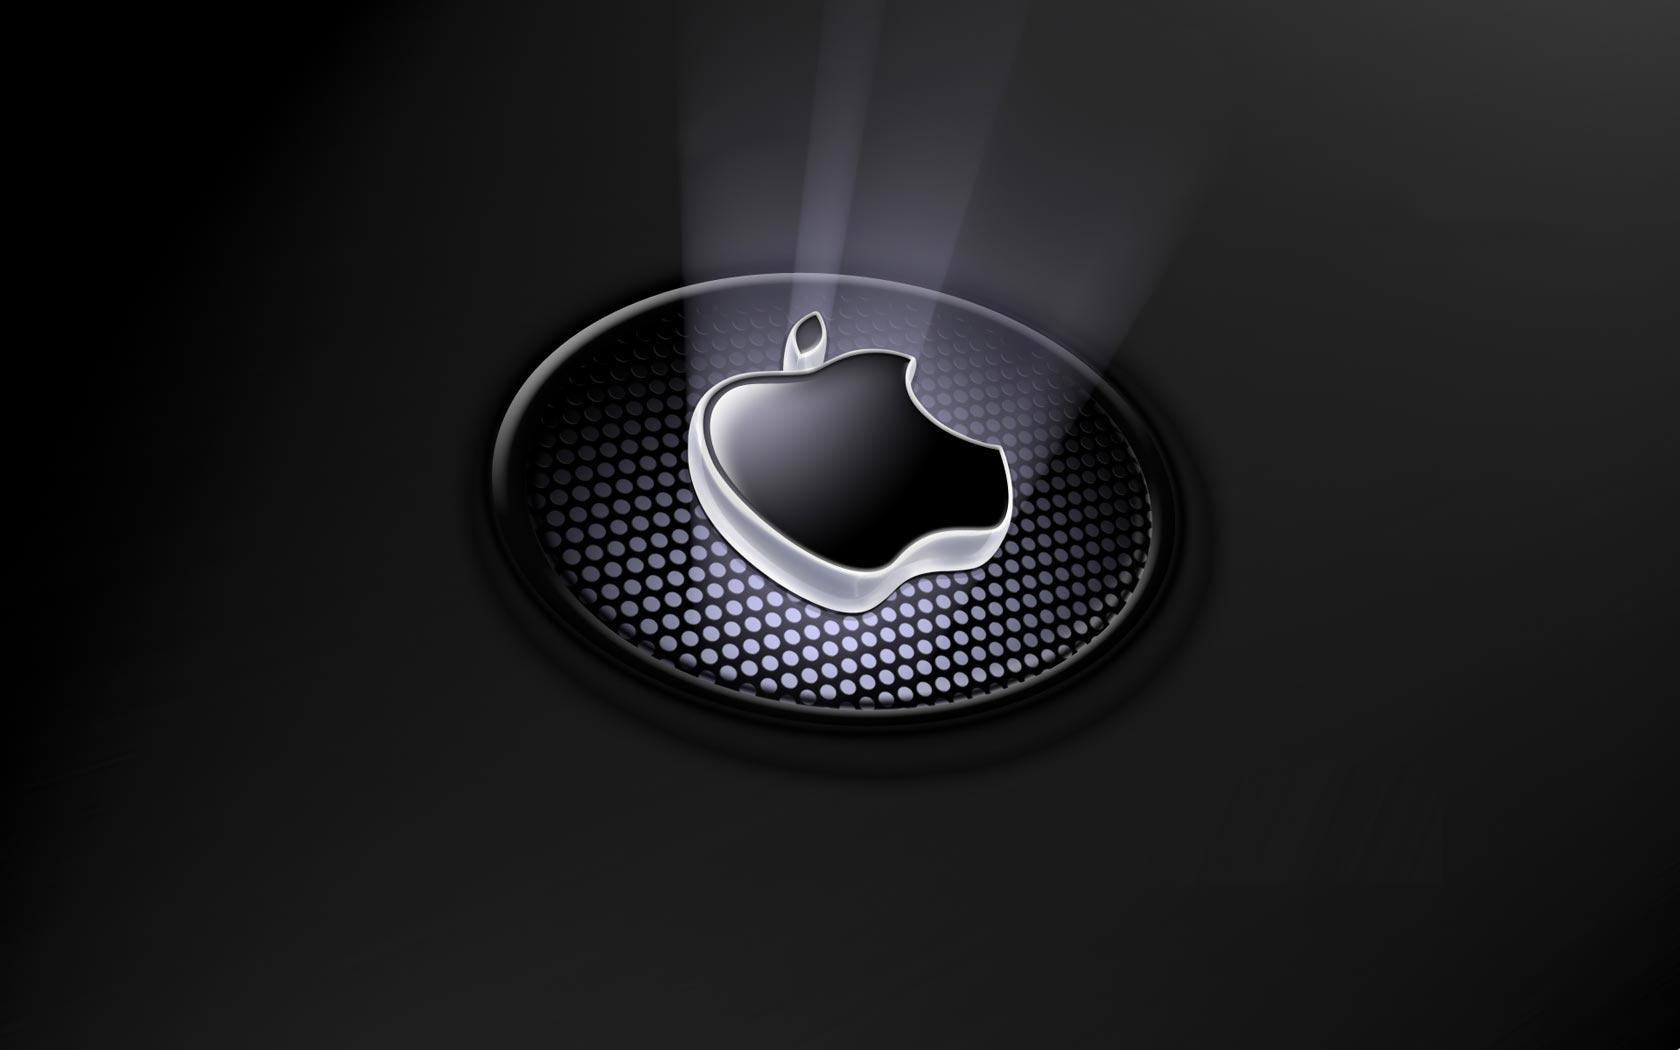 Apple Logo HD Wallpaper